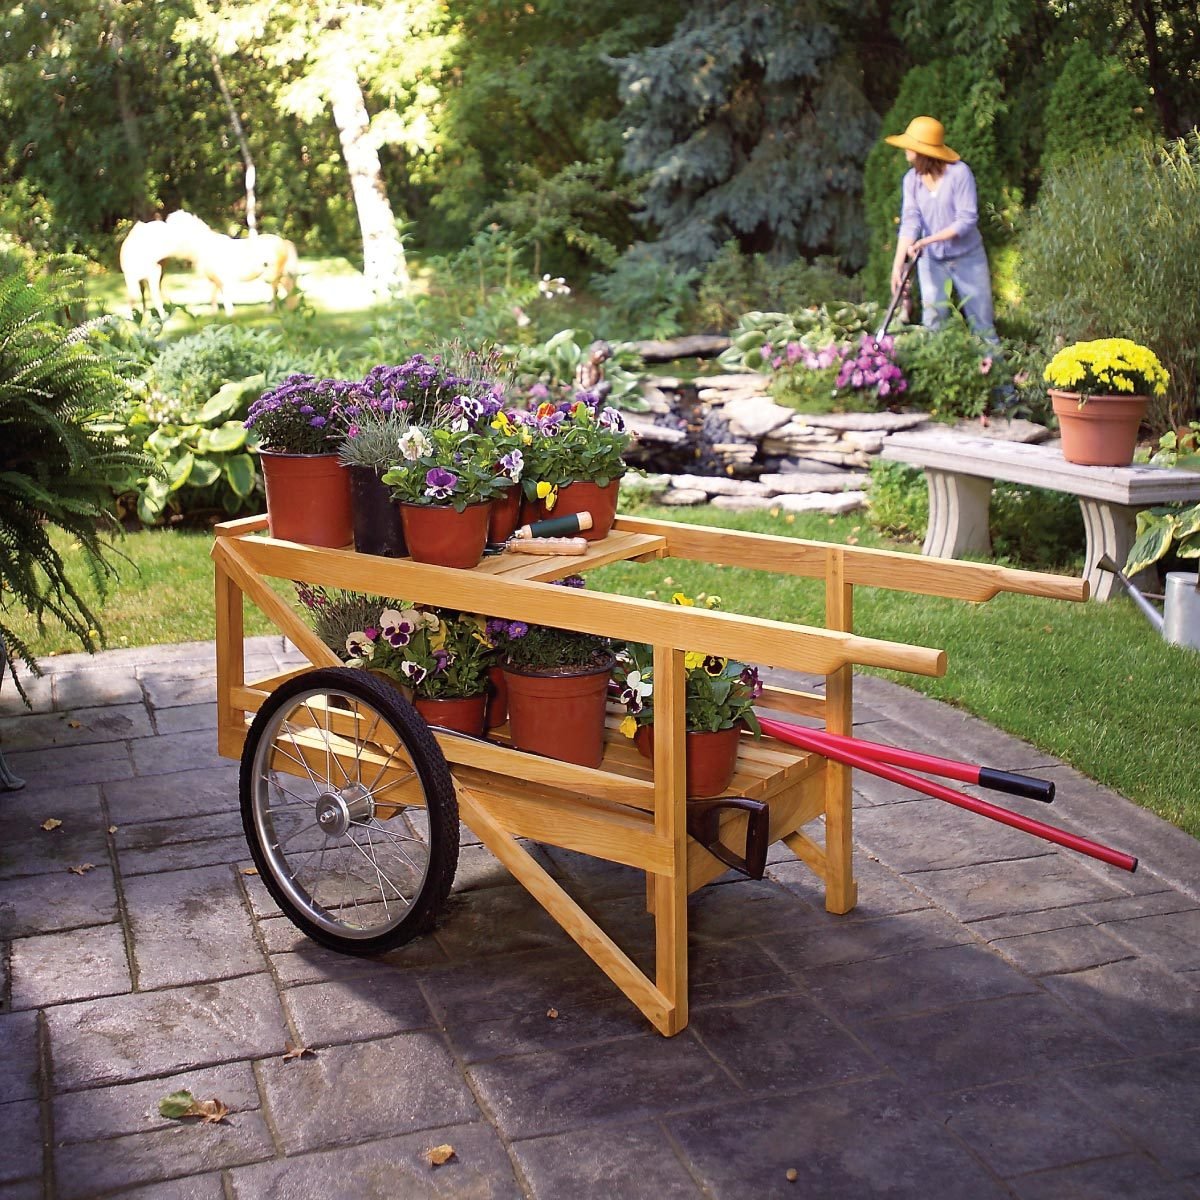 https://www.familyhandyman.com/wp-content/uploads/2017/06/Construct-a-Classic-Wooden-Cart_FH05APR_457_01_106_FT.jpg